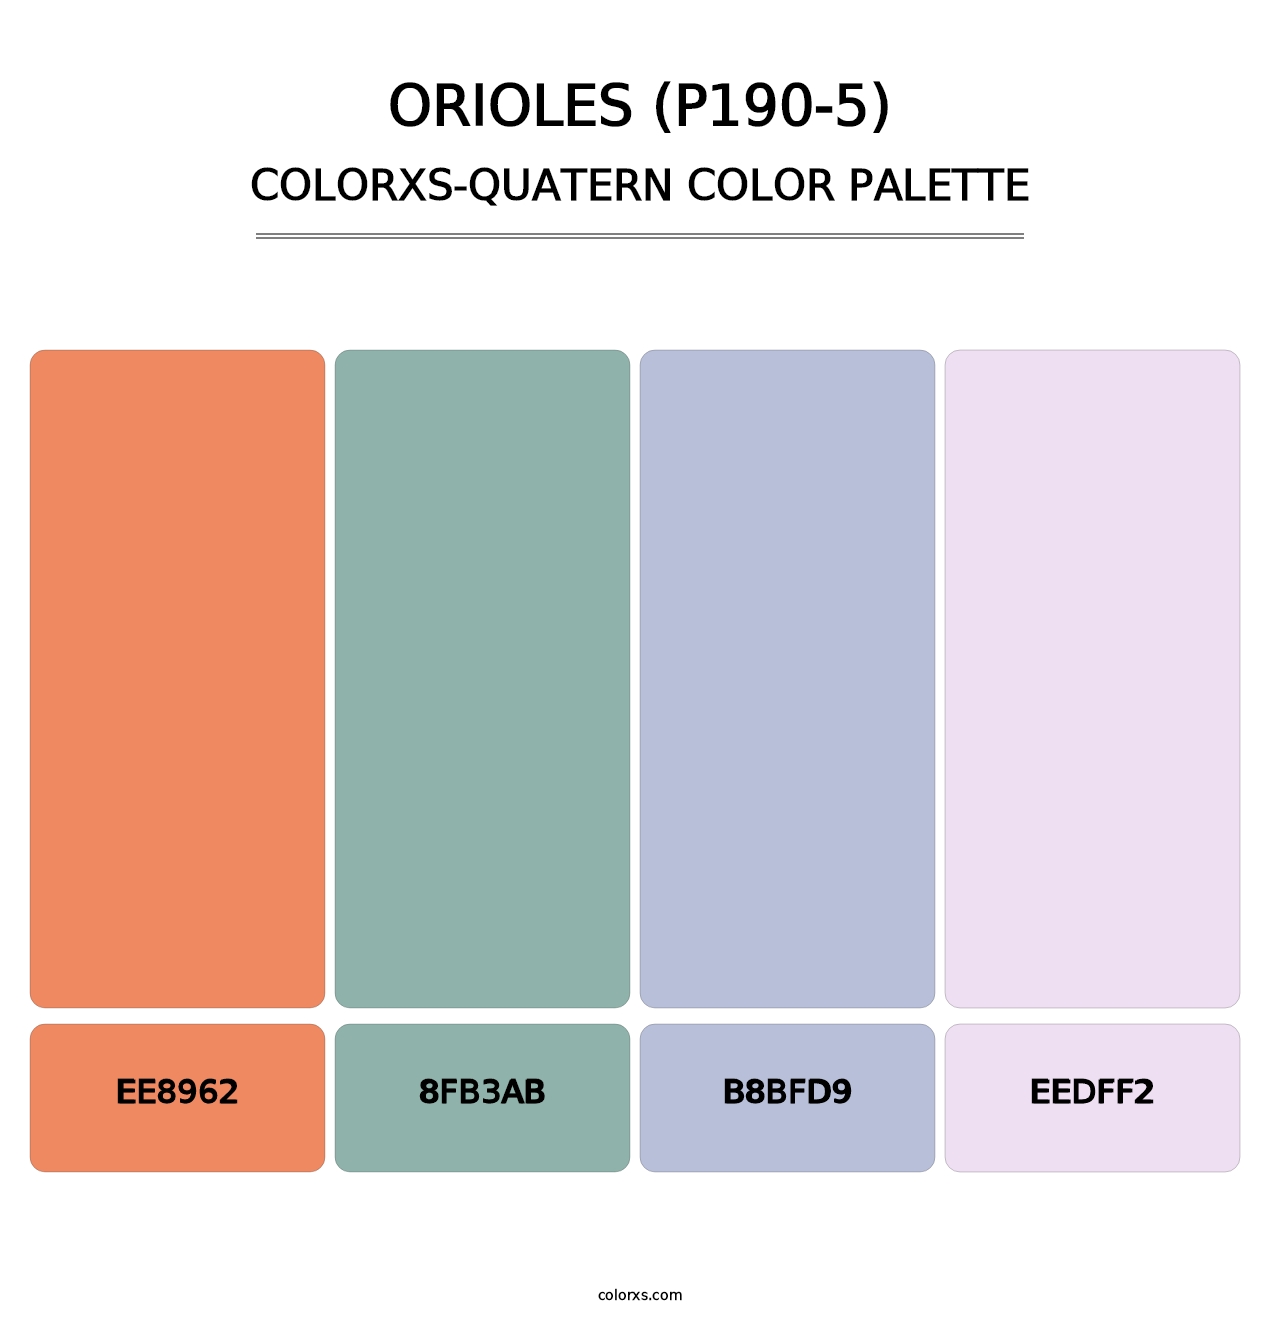 Orioles (P190-5) - Colorxs Quatern Palette